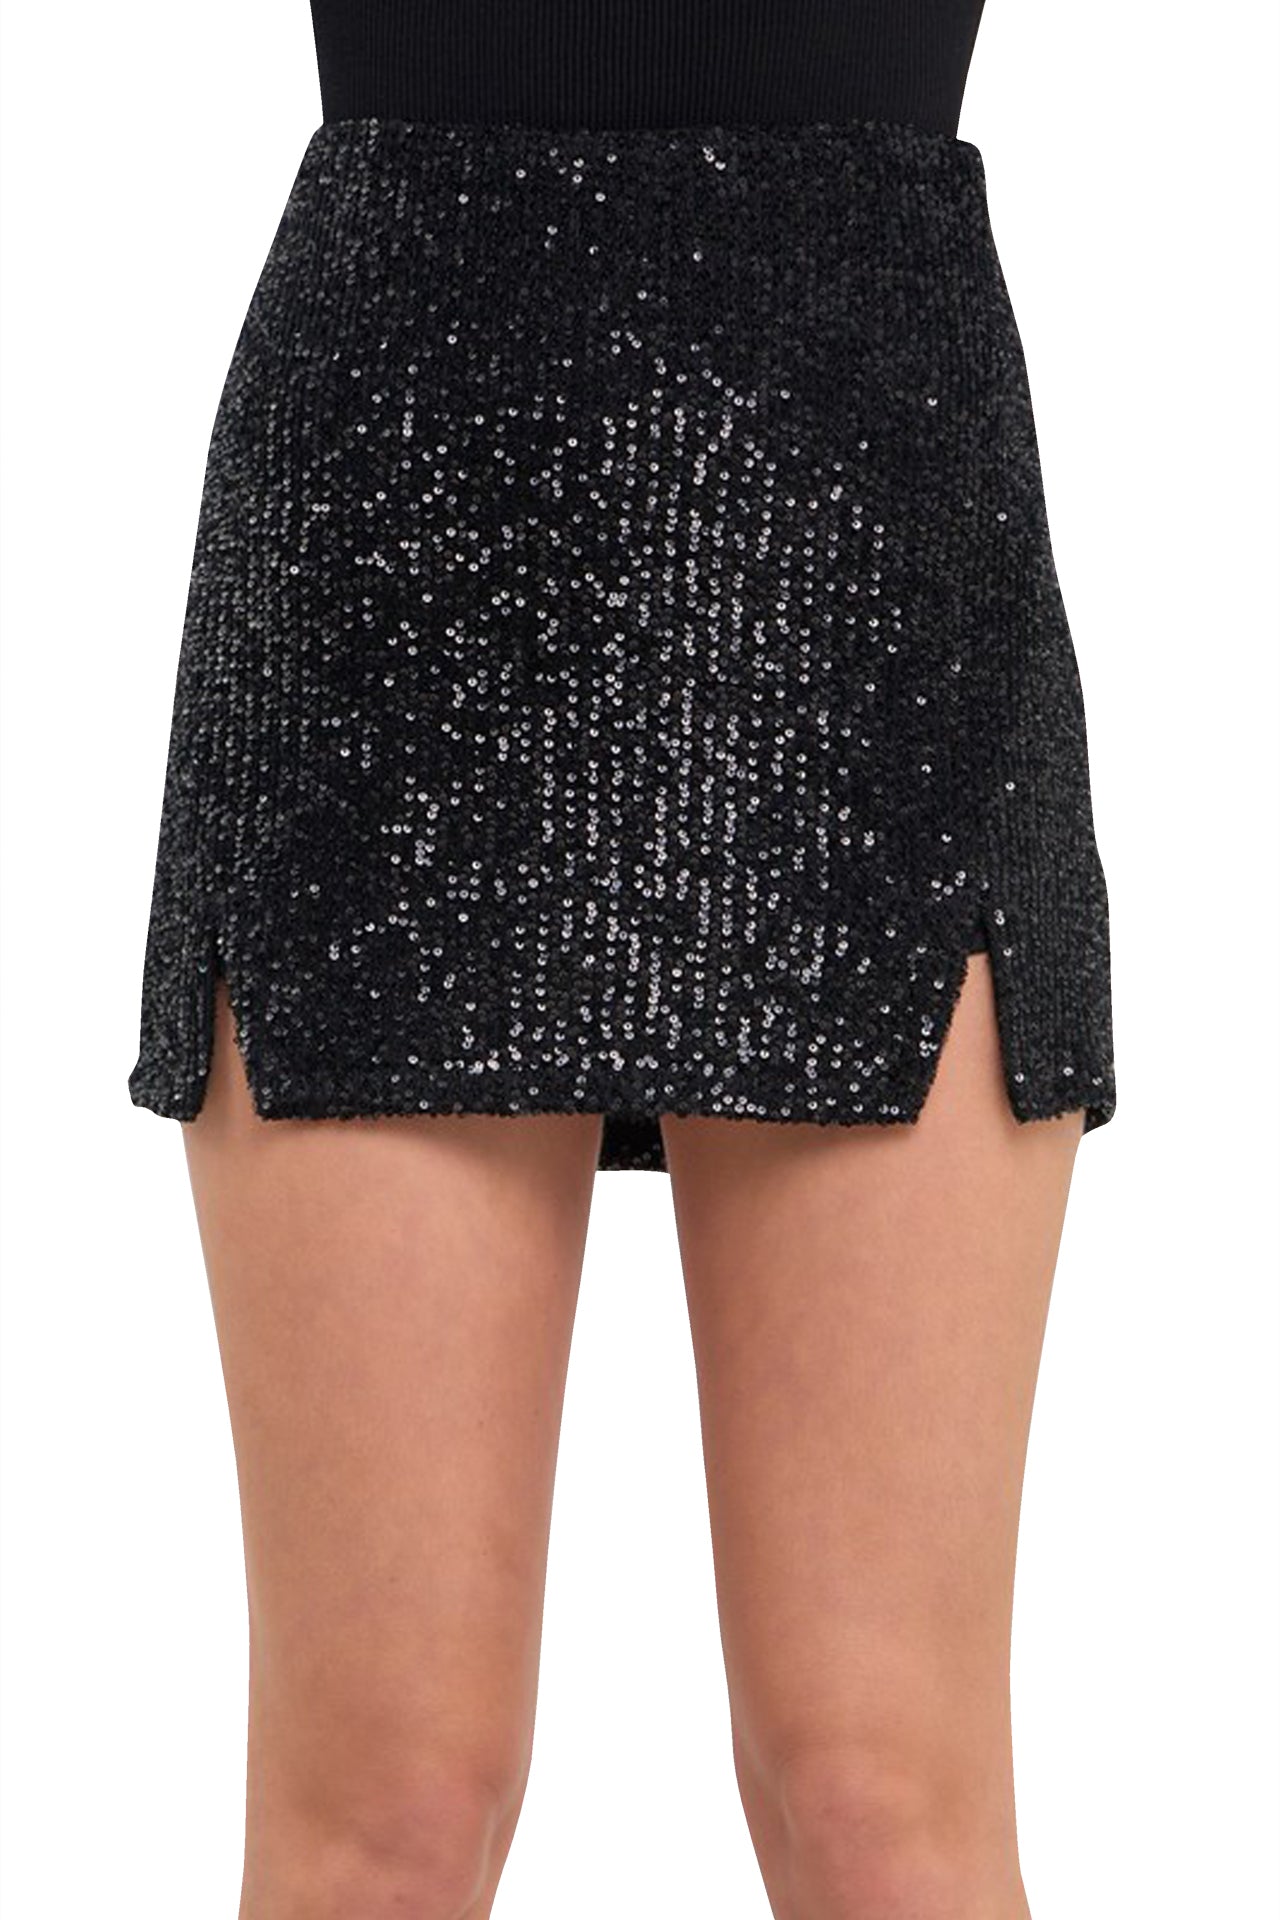 "black sequin plus size skirt" "sequin skirt with slit" "black sequin mini skirt" "Kyle X Shahida"